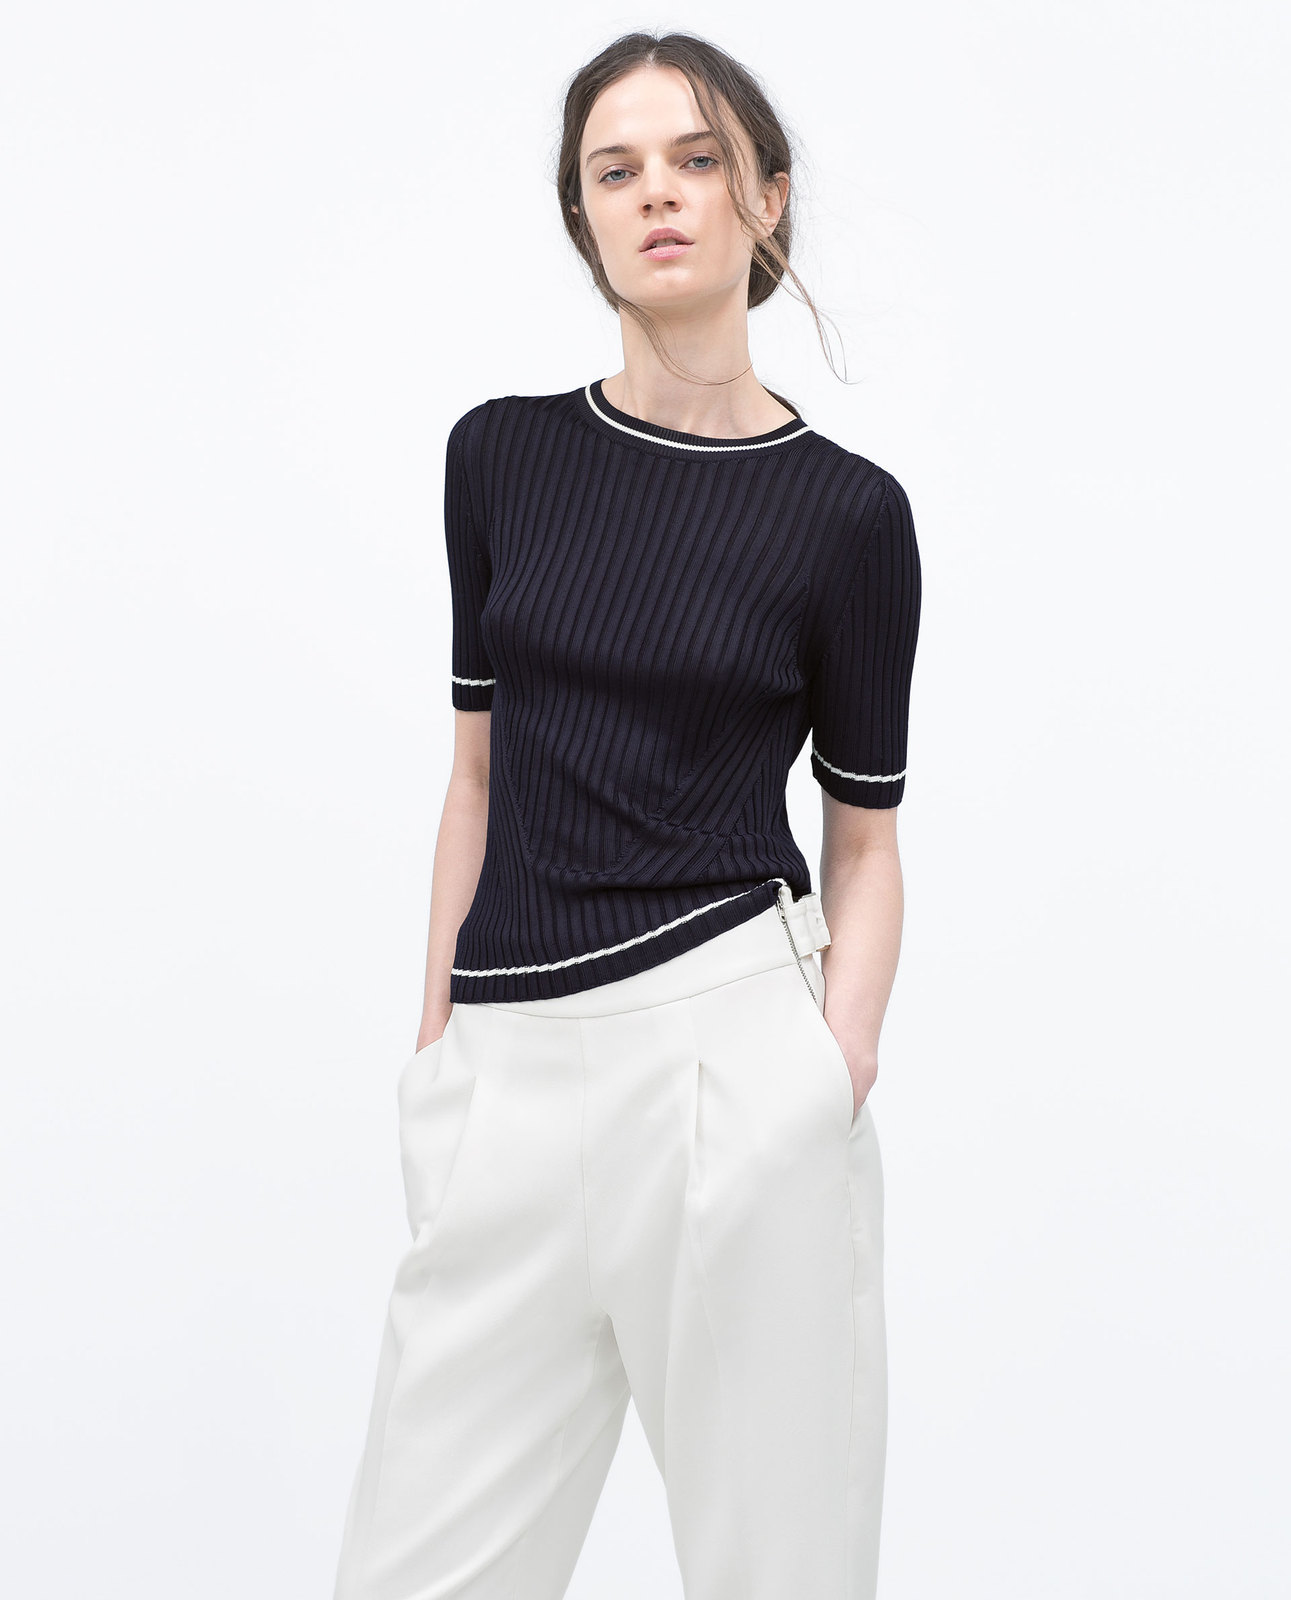 Zara fehér csíkkal díszített rövid ujjú pulóver 2015 fotója